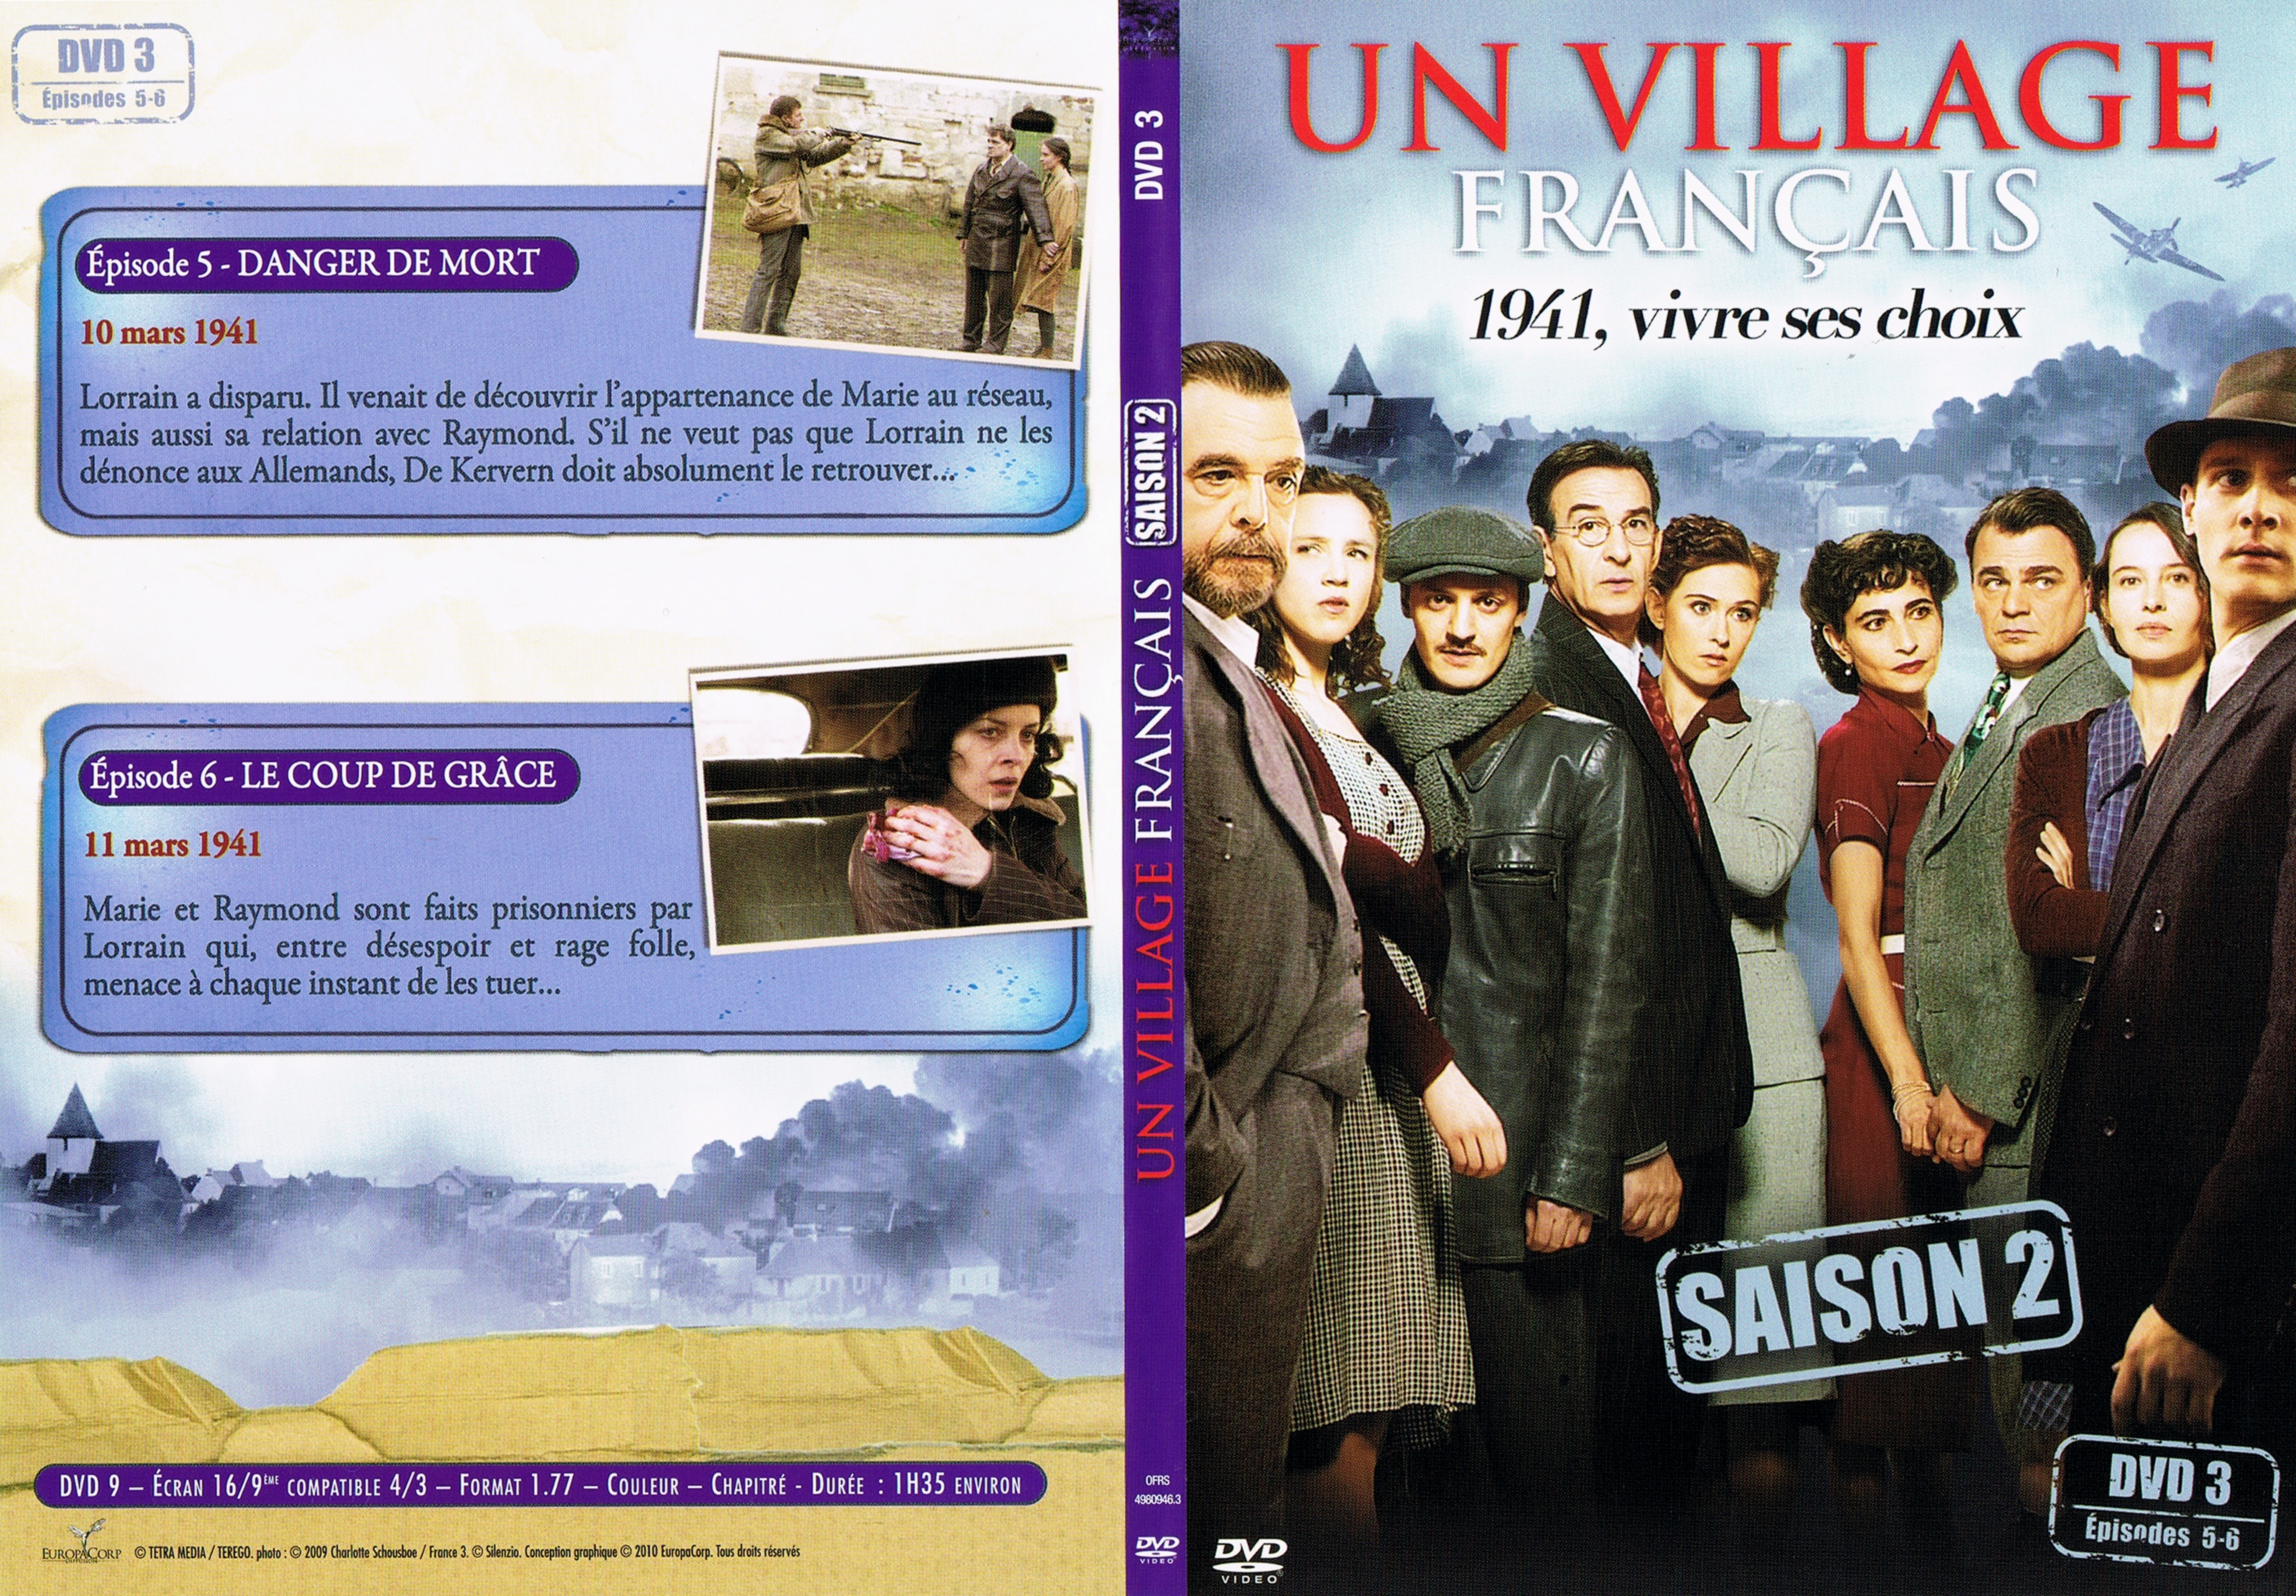 Jaquette DVD Un village francais Saison 2 DVD 3